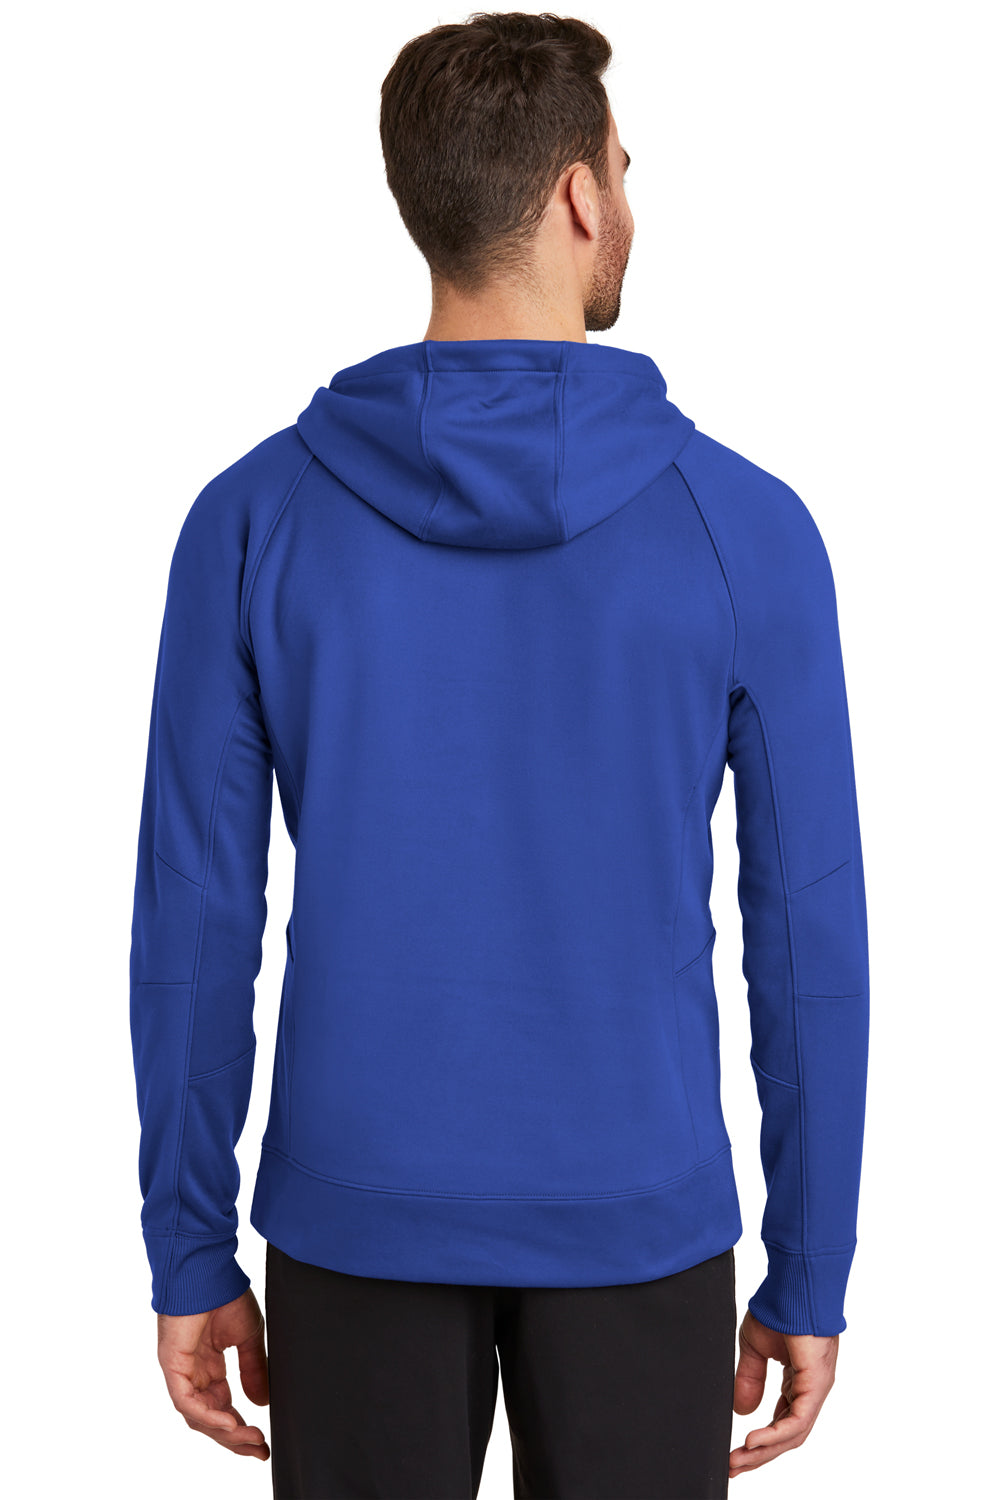 New Era NEA520 Mens Venue Fleece Hooded Sweatshirt Hoodie Royal Blue Back